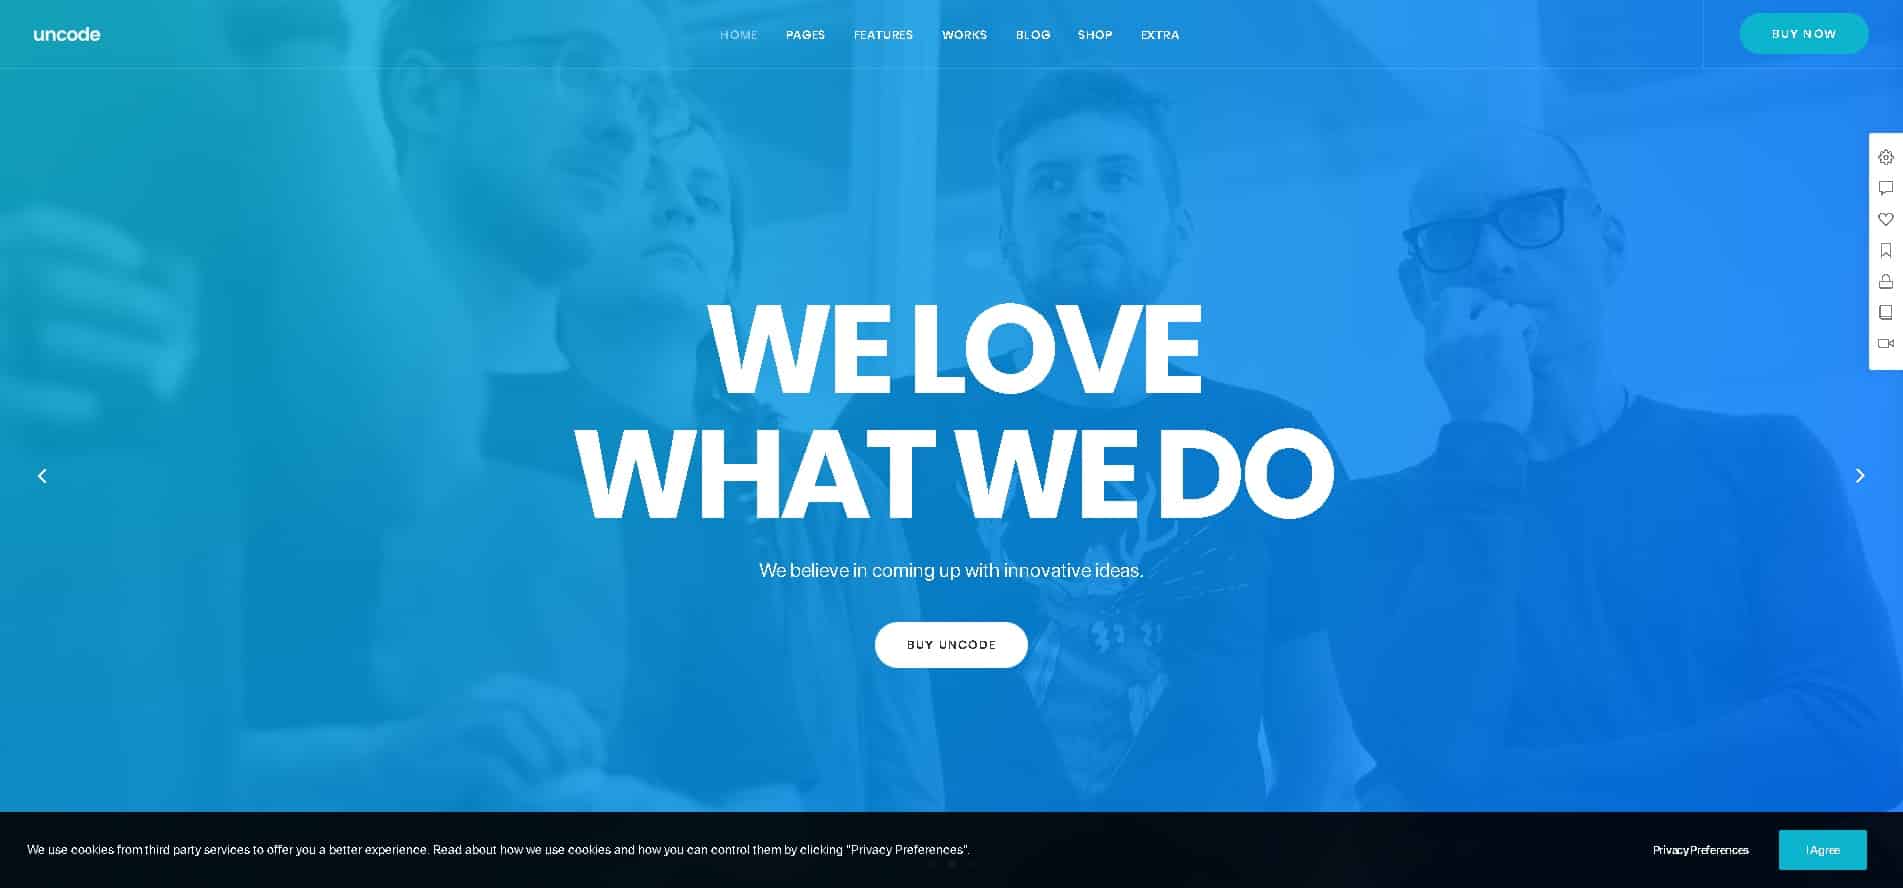 Website design agency, Brandkraft Co